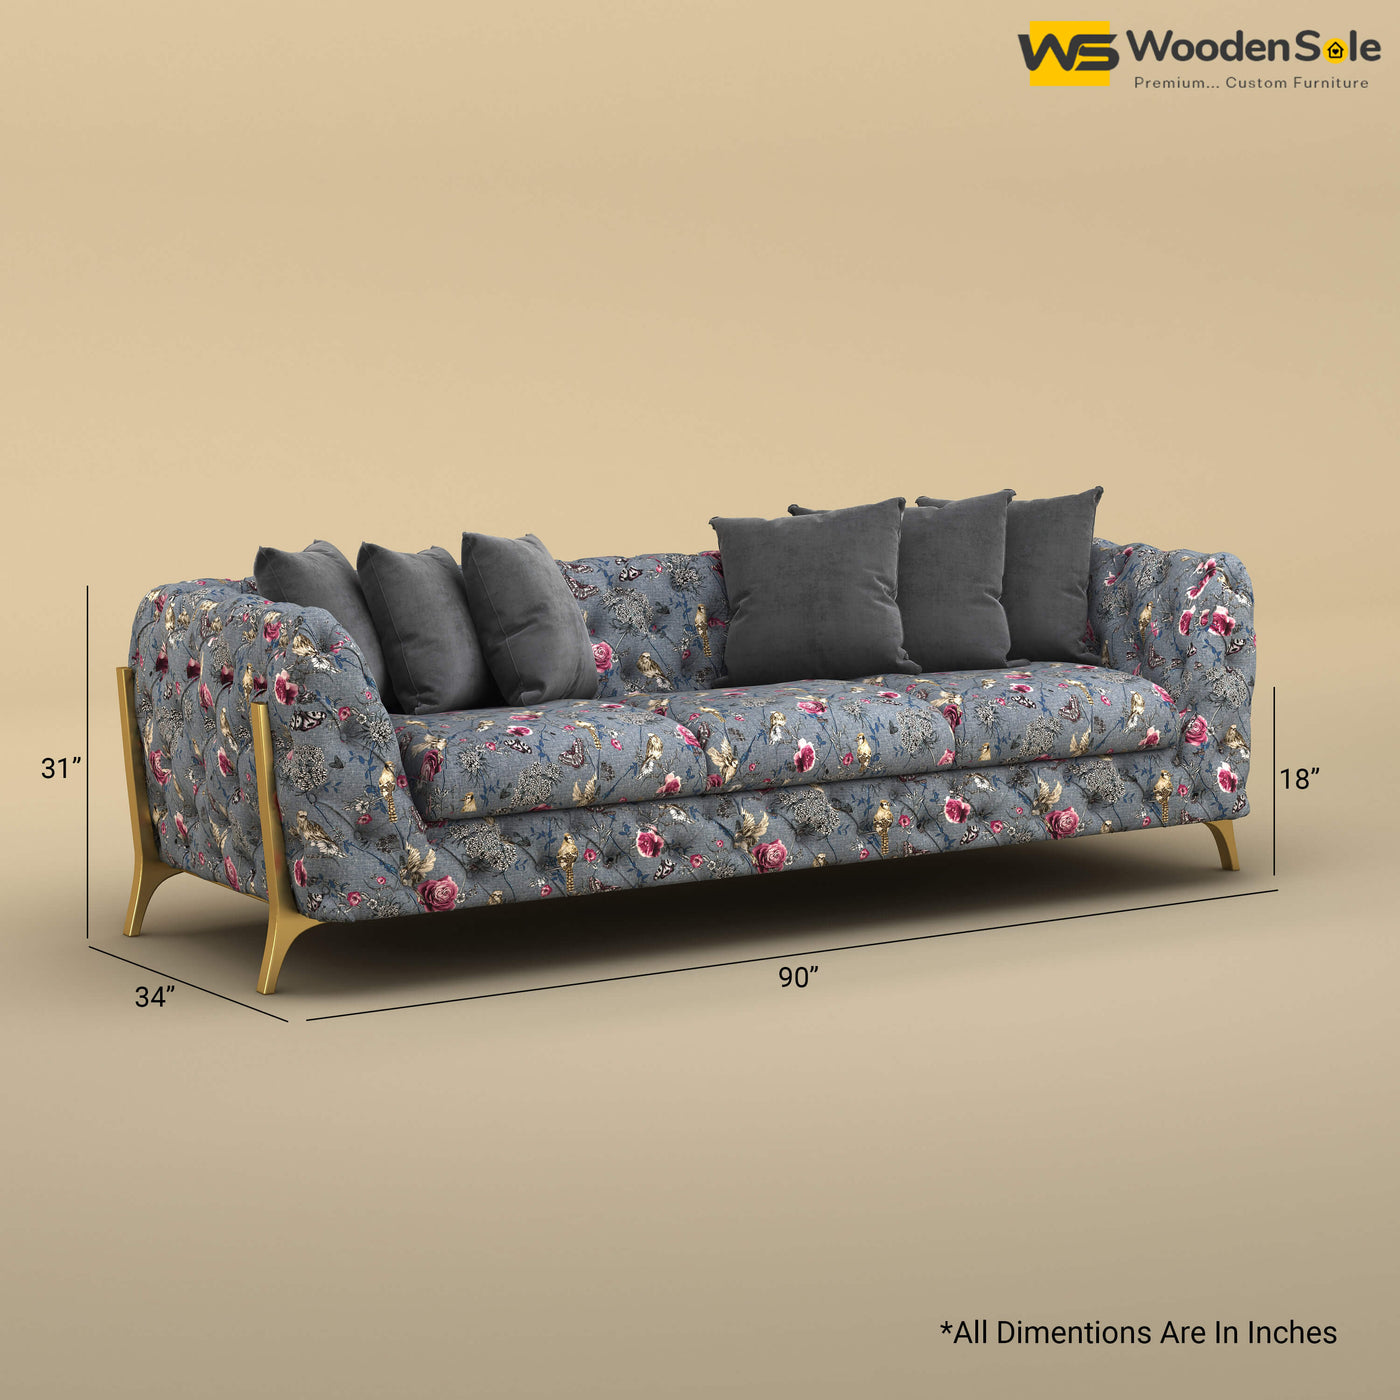 Adhira 3 Seater Premium Sofa (Cotton, Floral Printed)